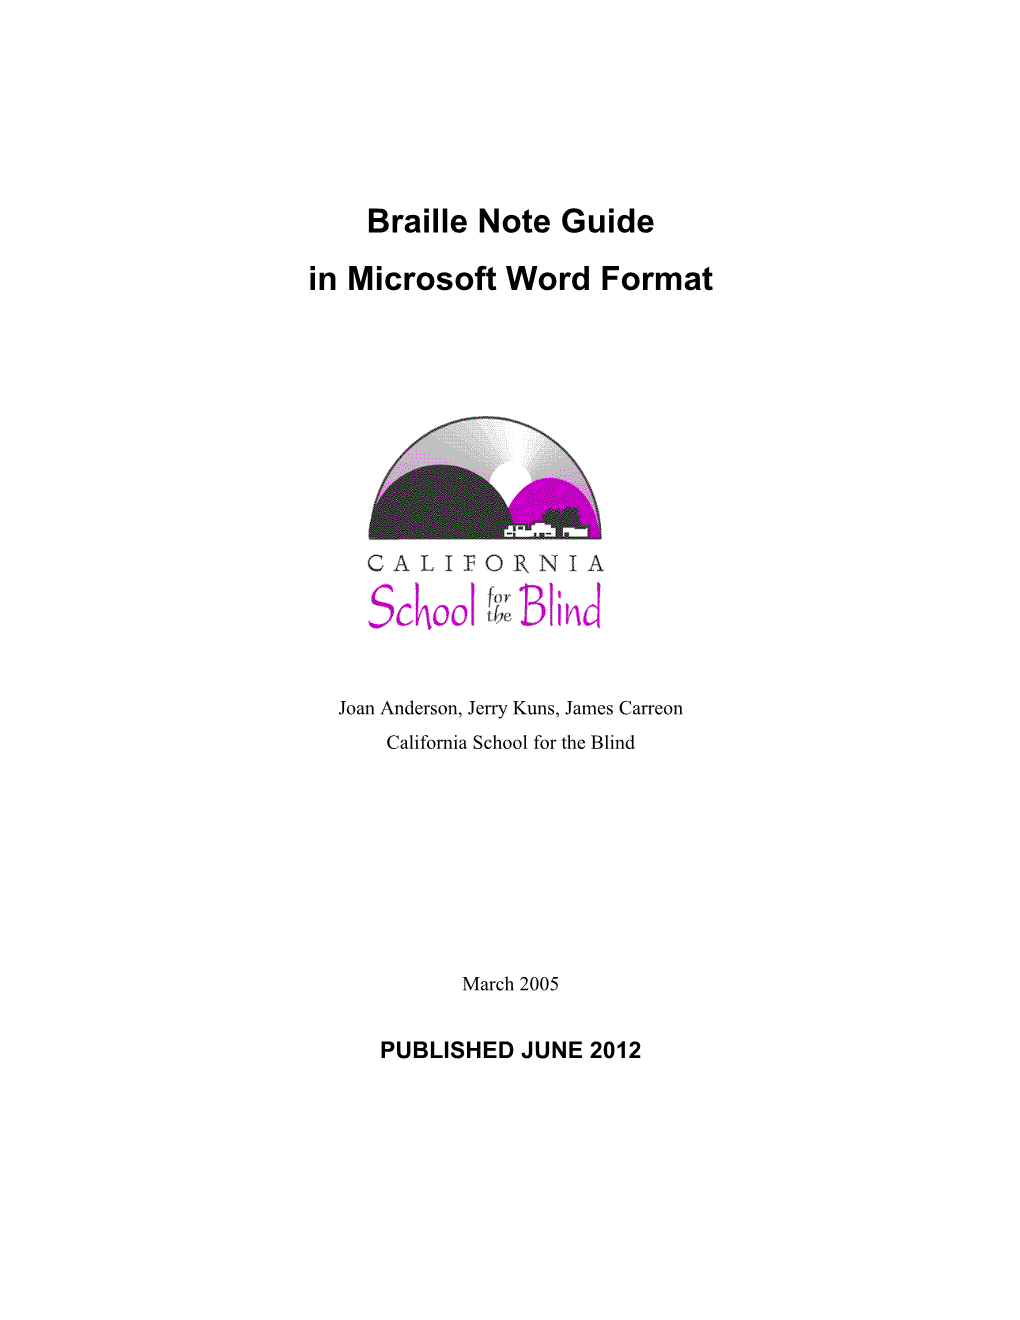 Braille 'N Speak & Braille Lite Commands